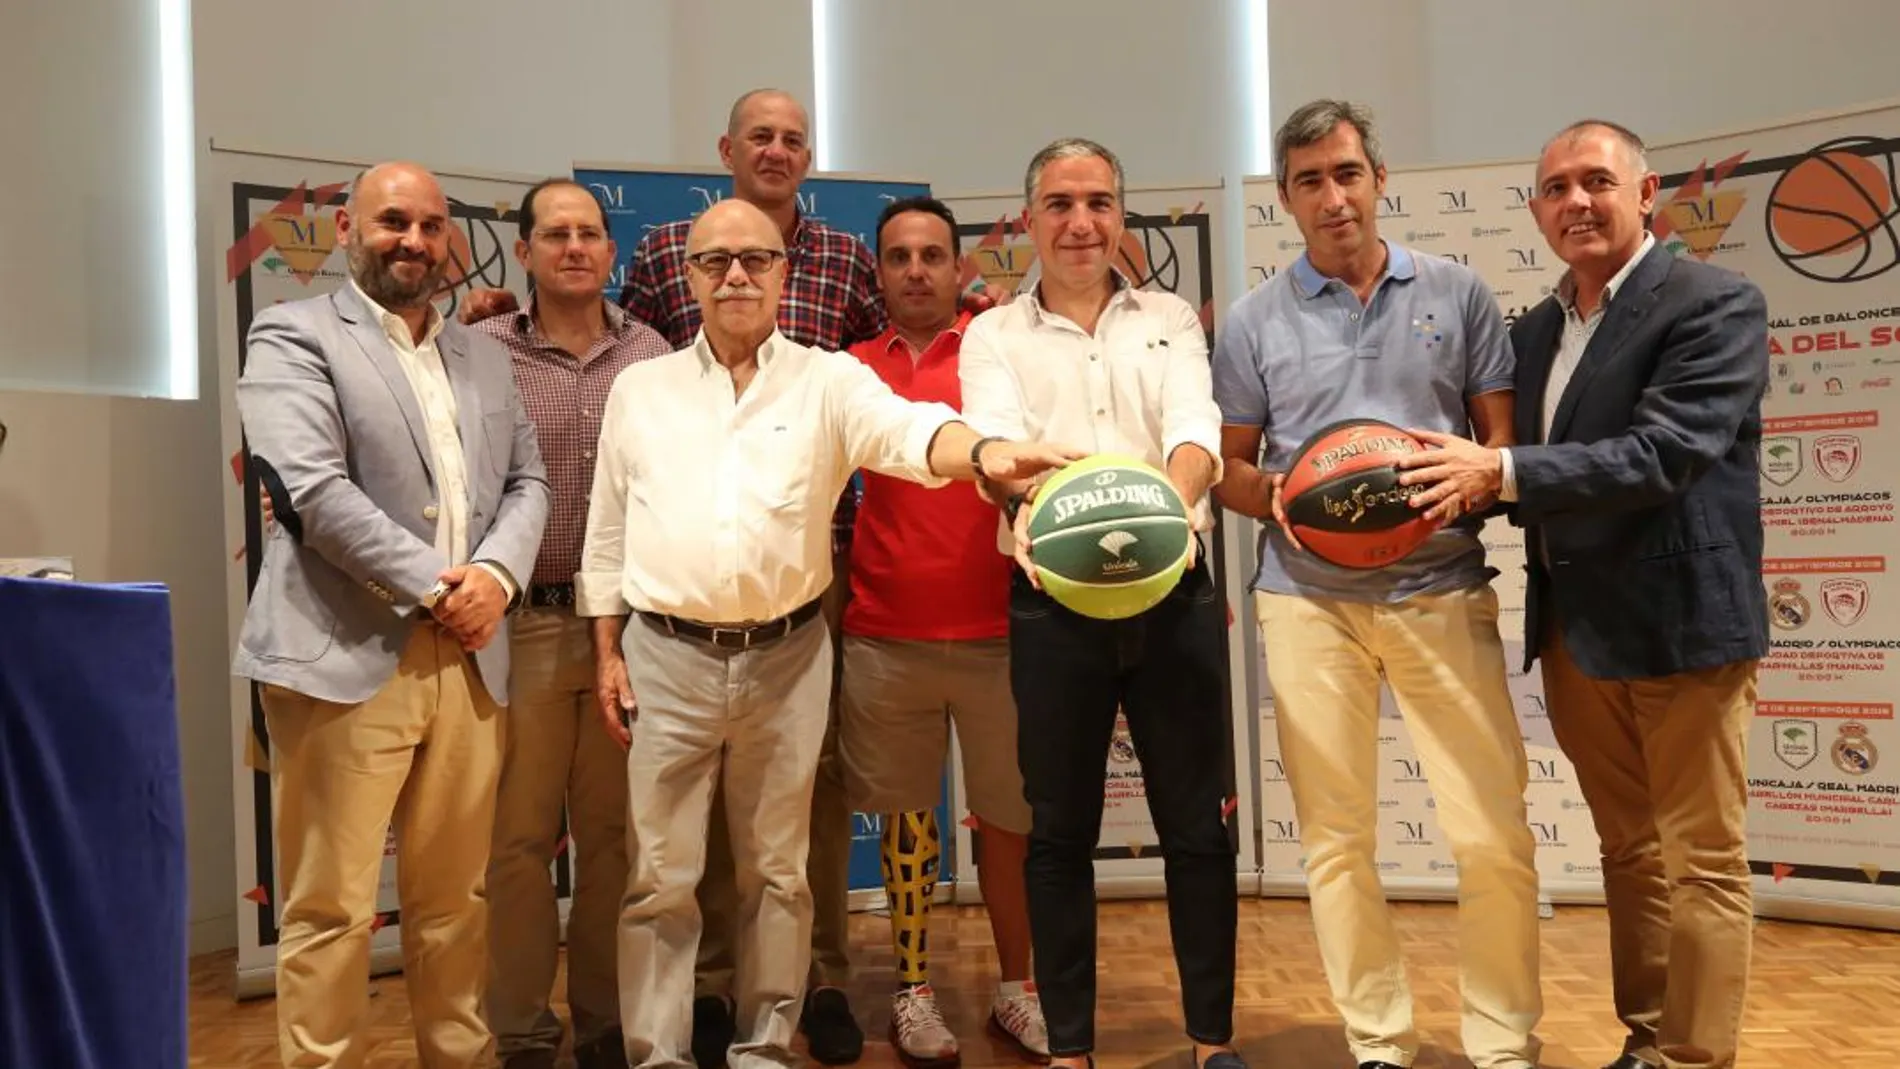 Málaga ha acogido la presentación del torneo / Foto: La Razón